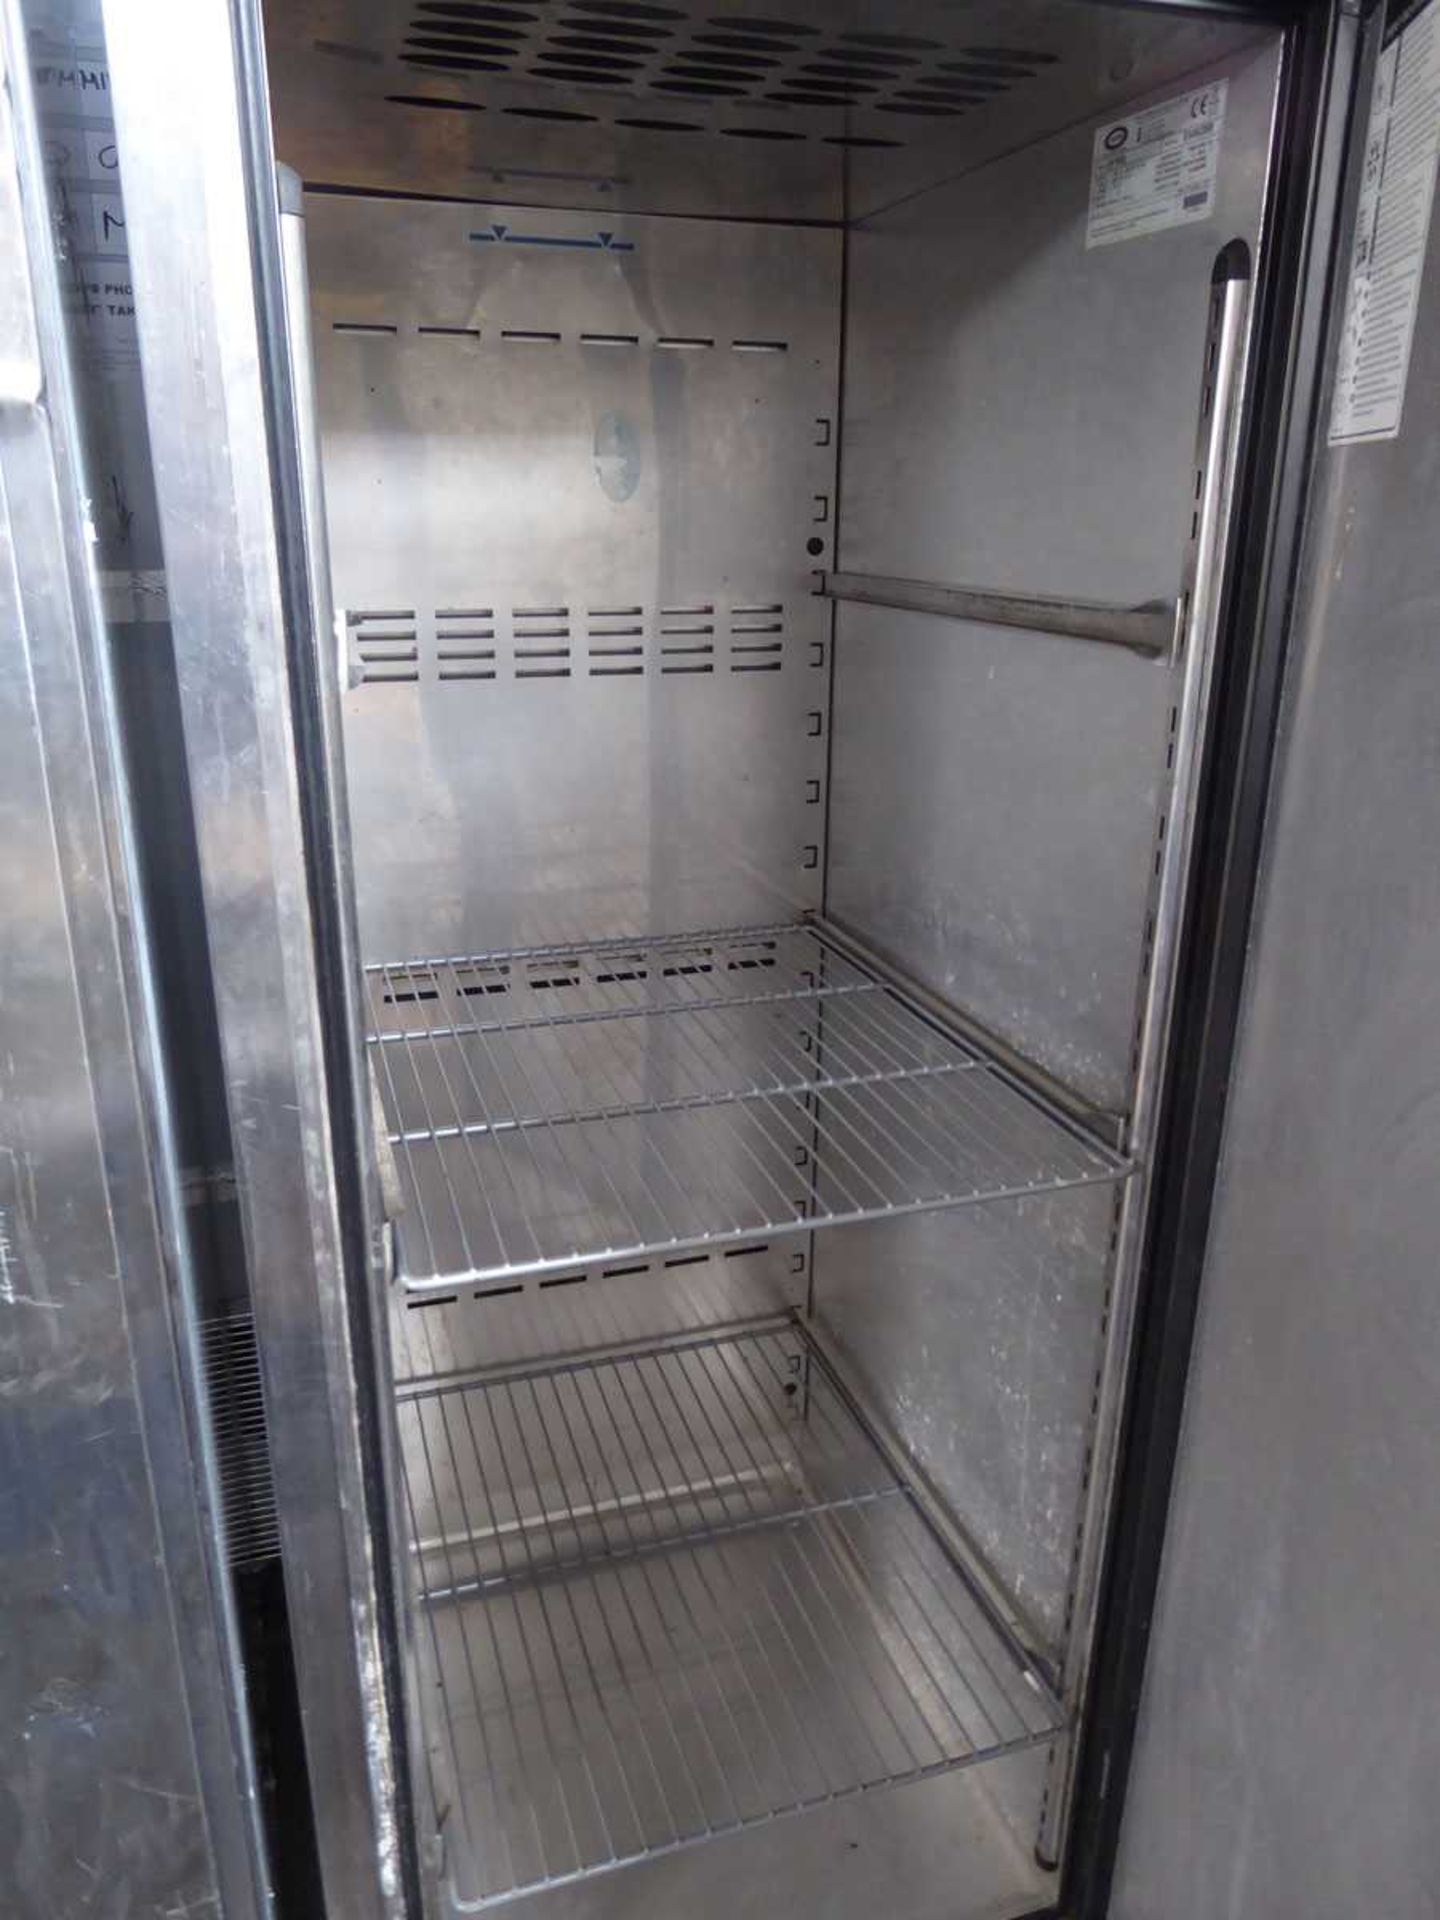 70cm model EP700L single door freezer (No lead) - Image 2 of 2